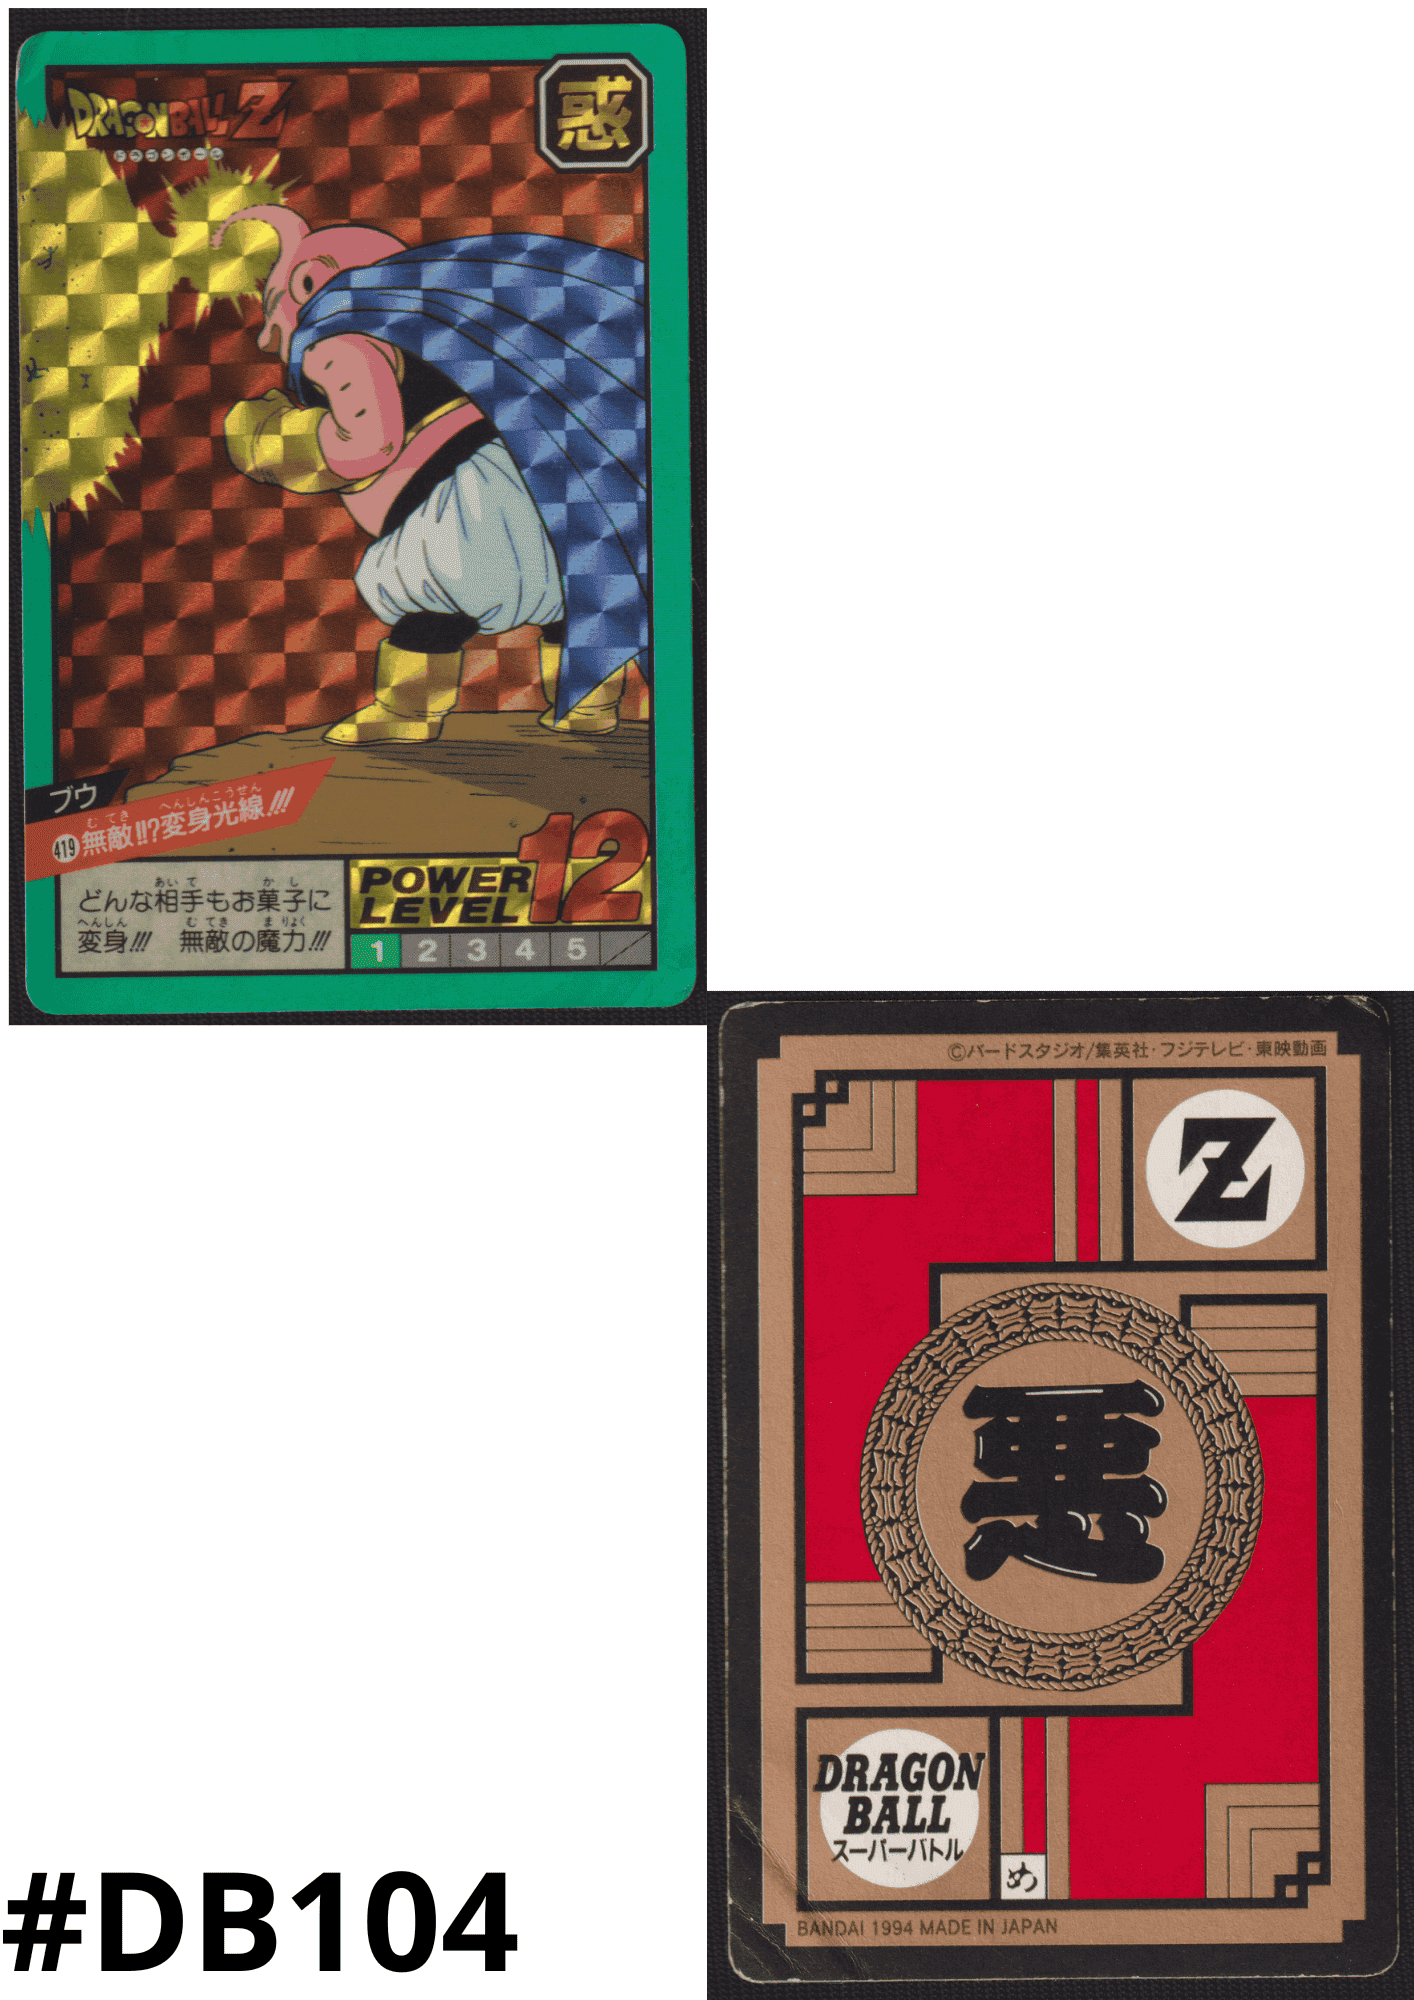 Buu Nr. 419 | Carddass Super Battle ChitoroShop